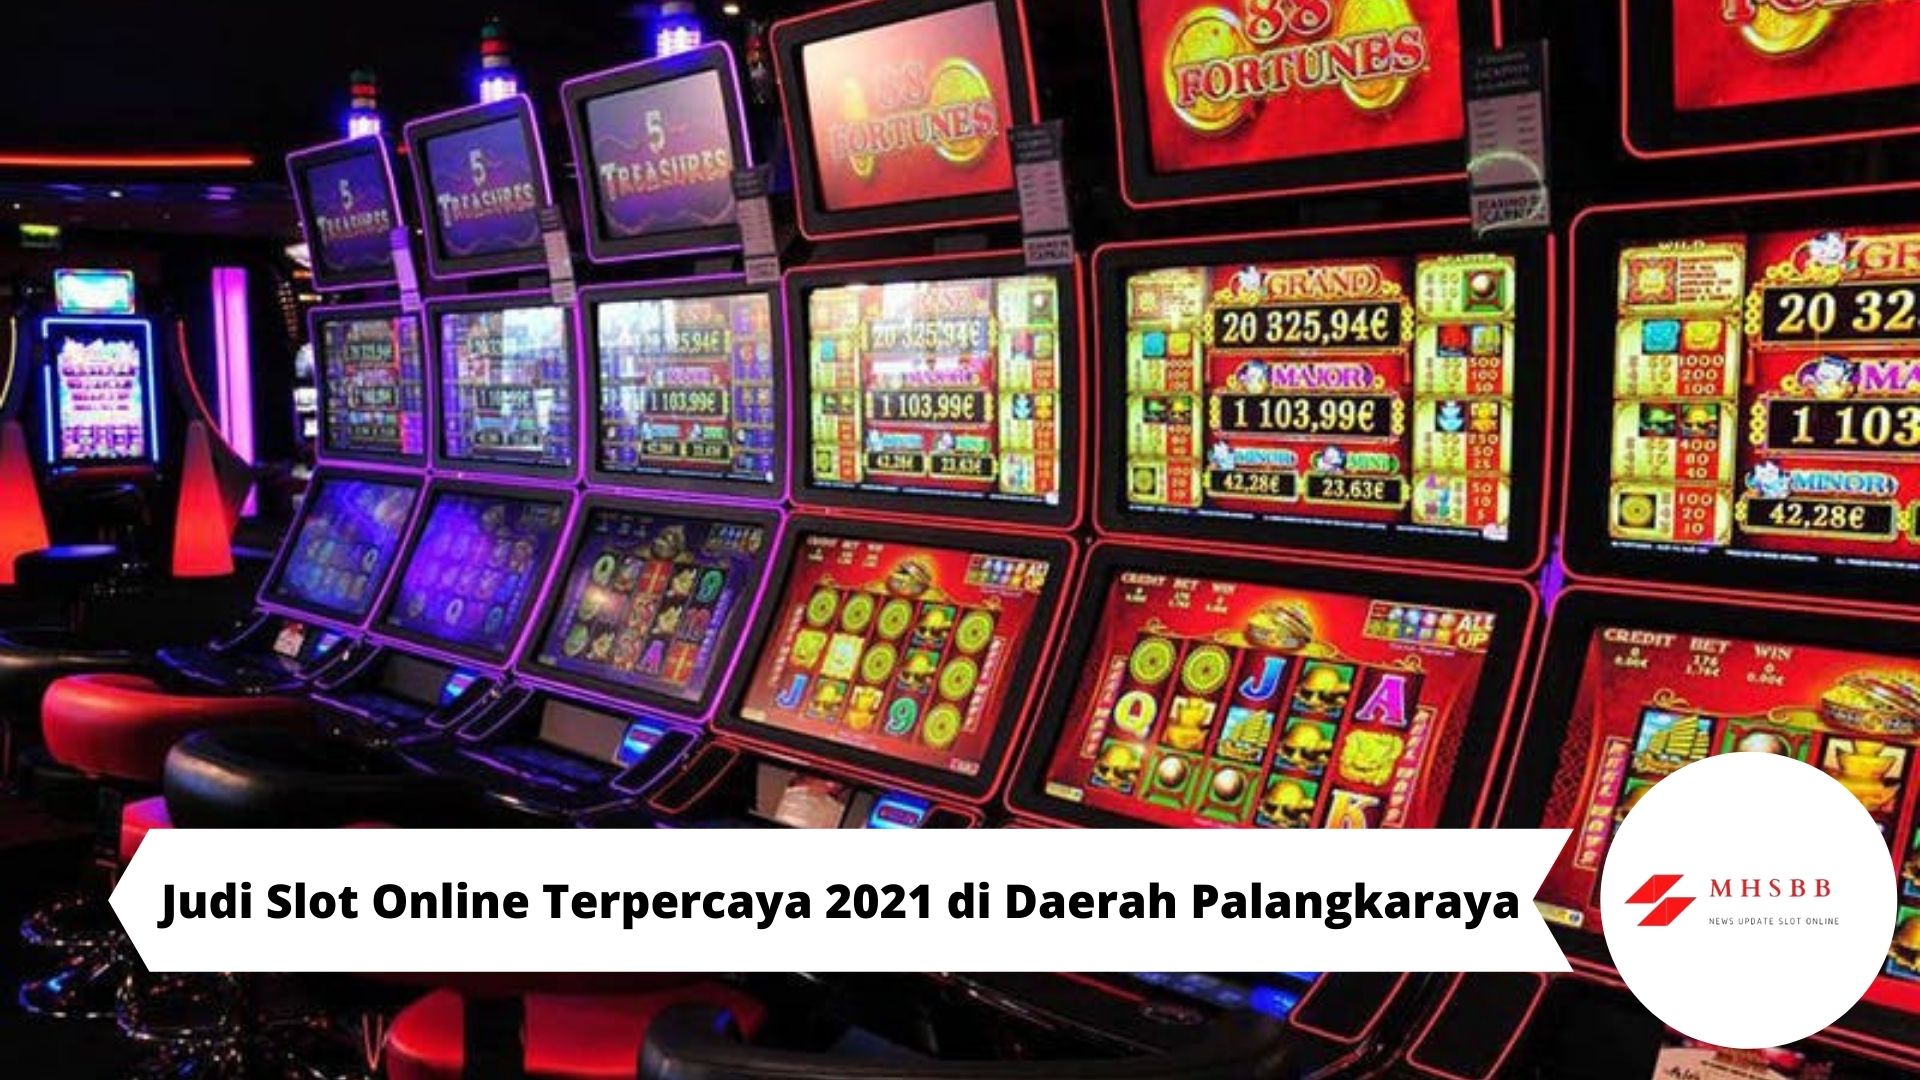 Judi Slot Online Terpercaya 2021 di Daerah Palangkaraya